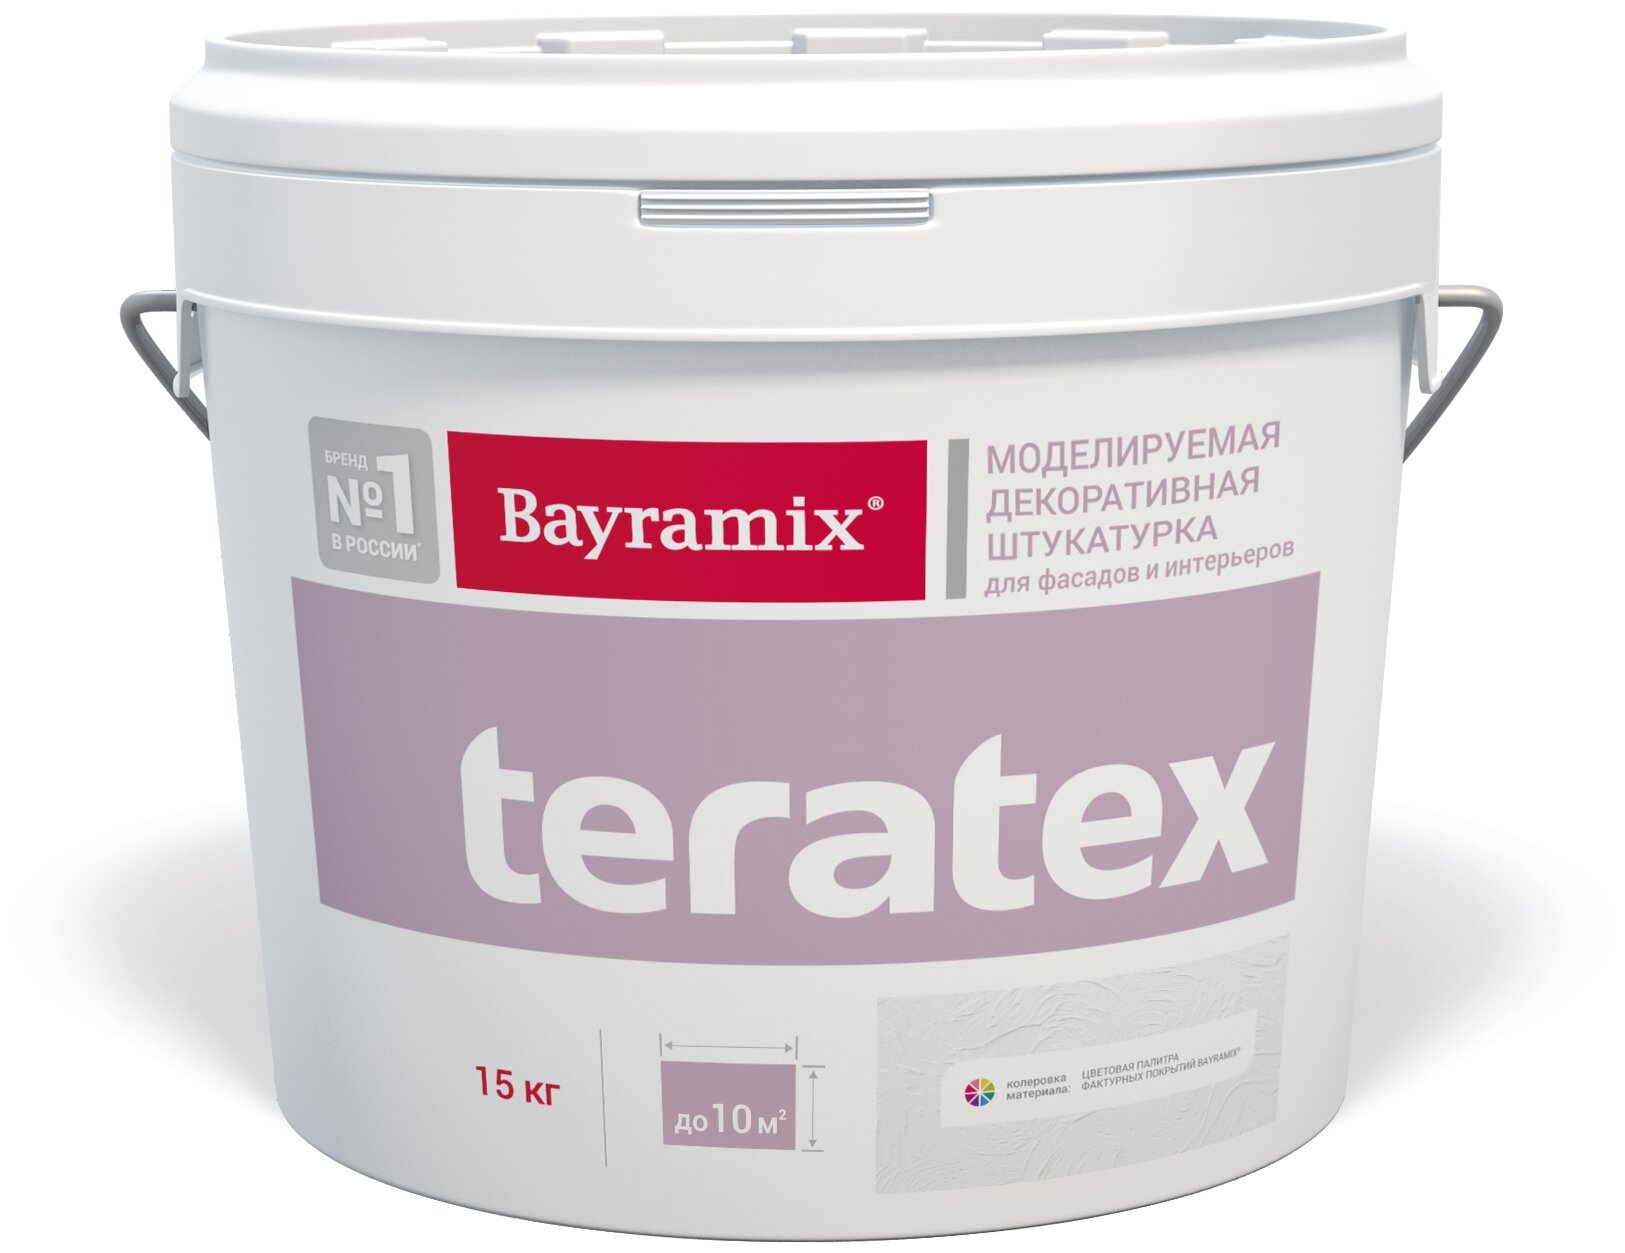   Bayramix Teratex TX 001  15 